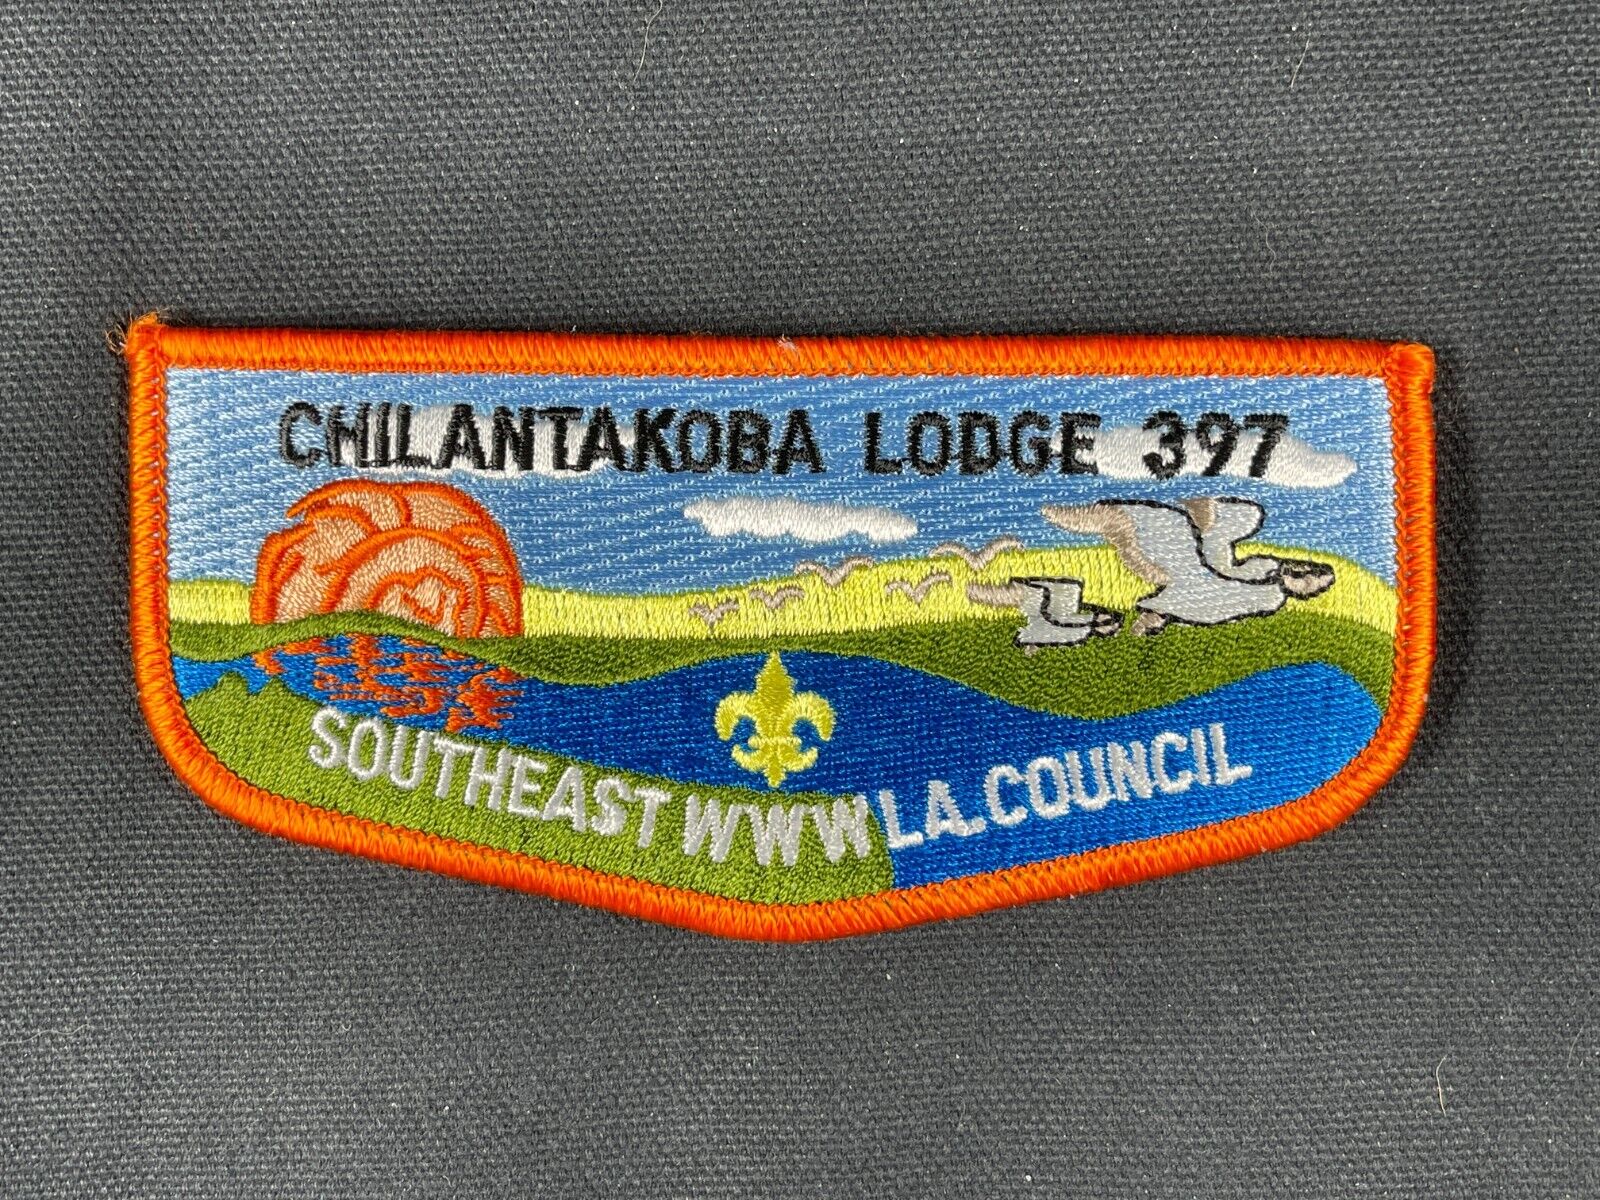 OA Flap Chilantakoba Lodge 397 Orange Border